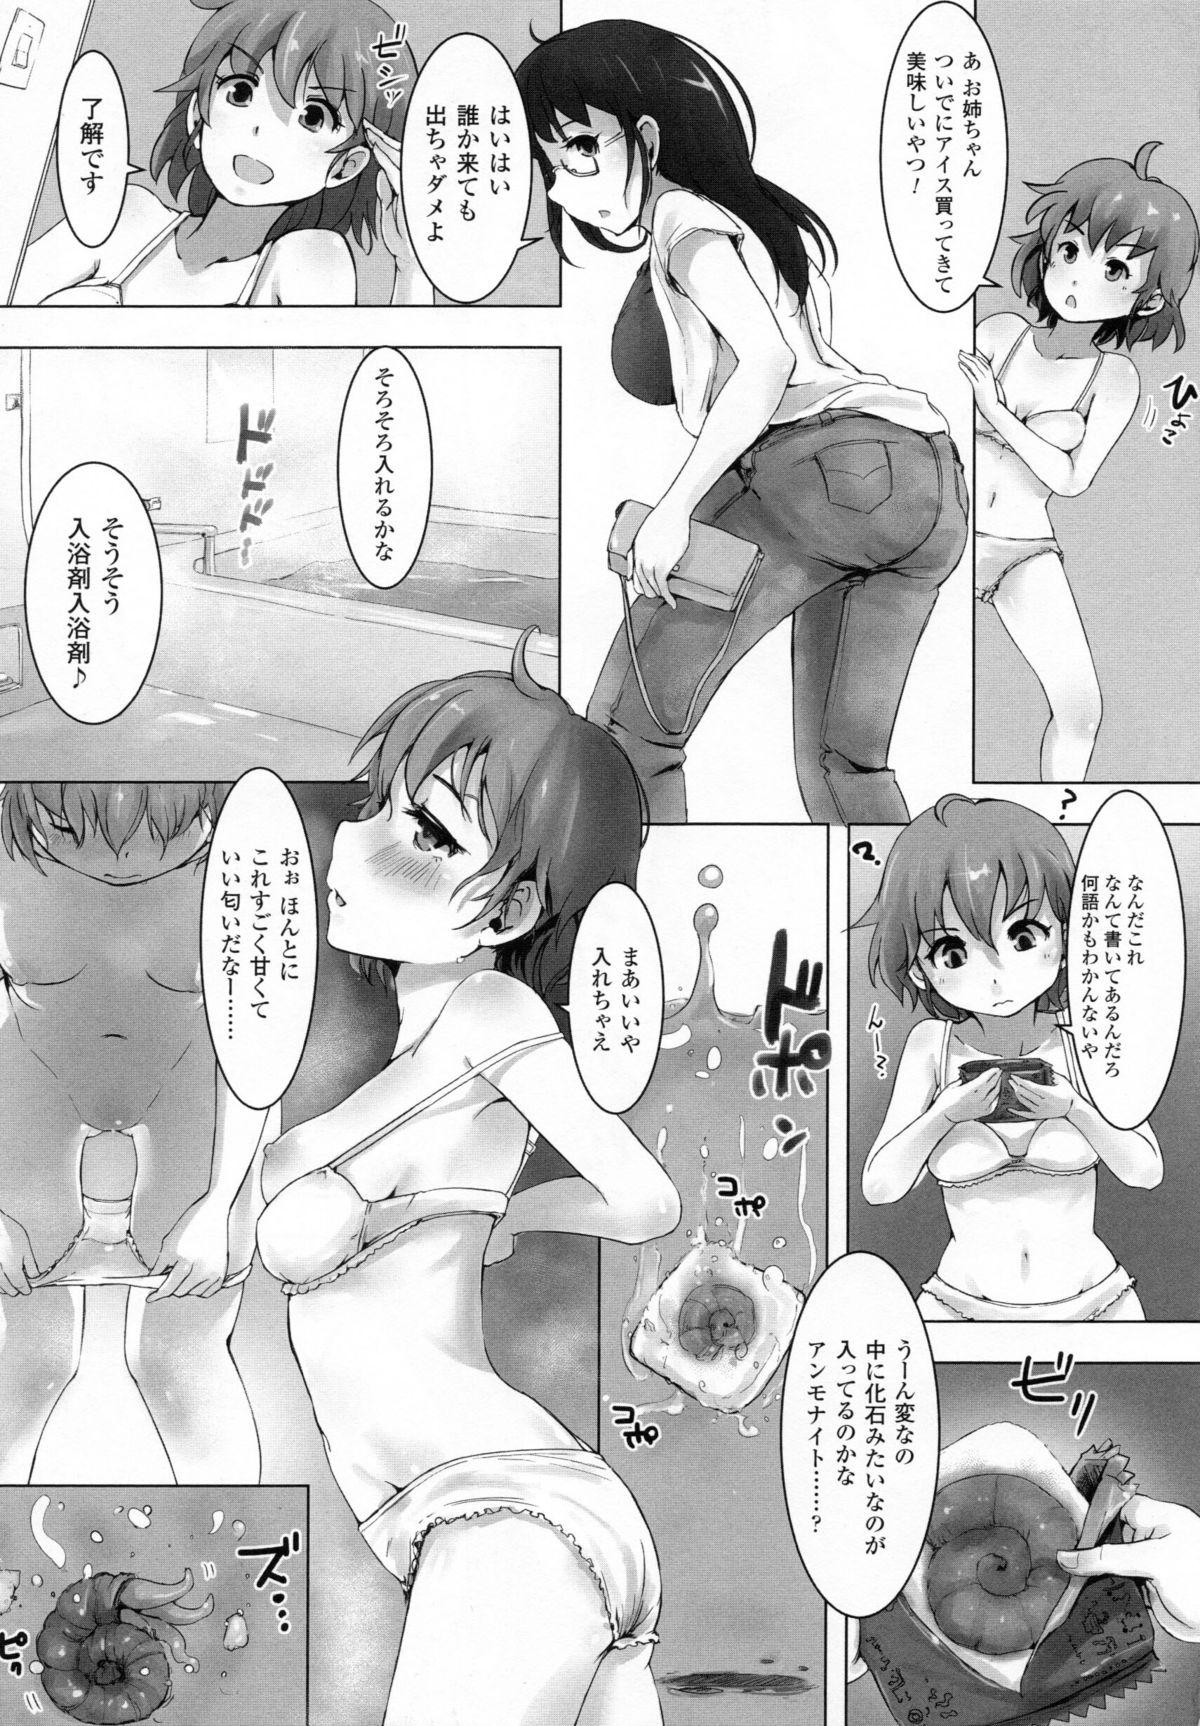 Chica 2D Dream Comic Magazine Moshimo Gendai Nippon ni Shokushu ga Arawaretara 19yo - Page 9